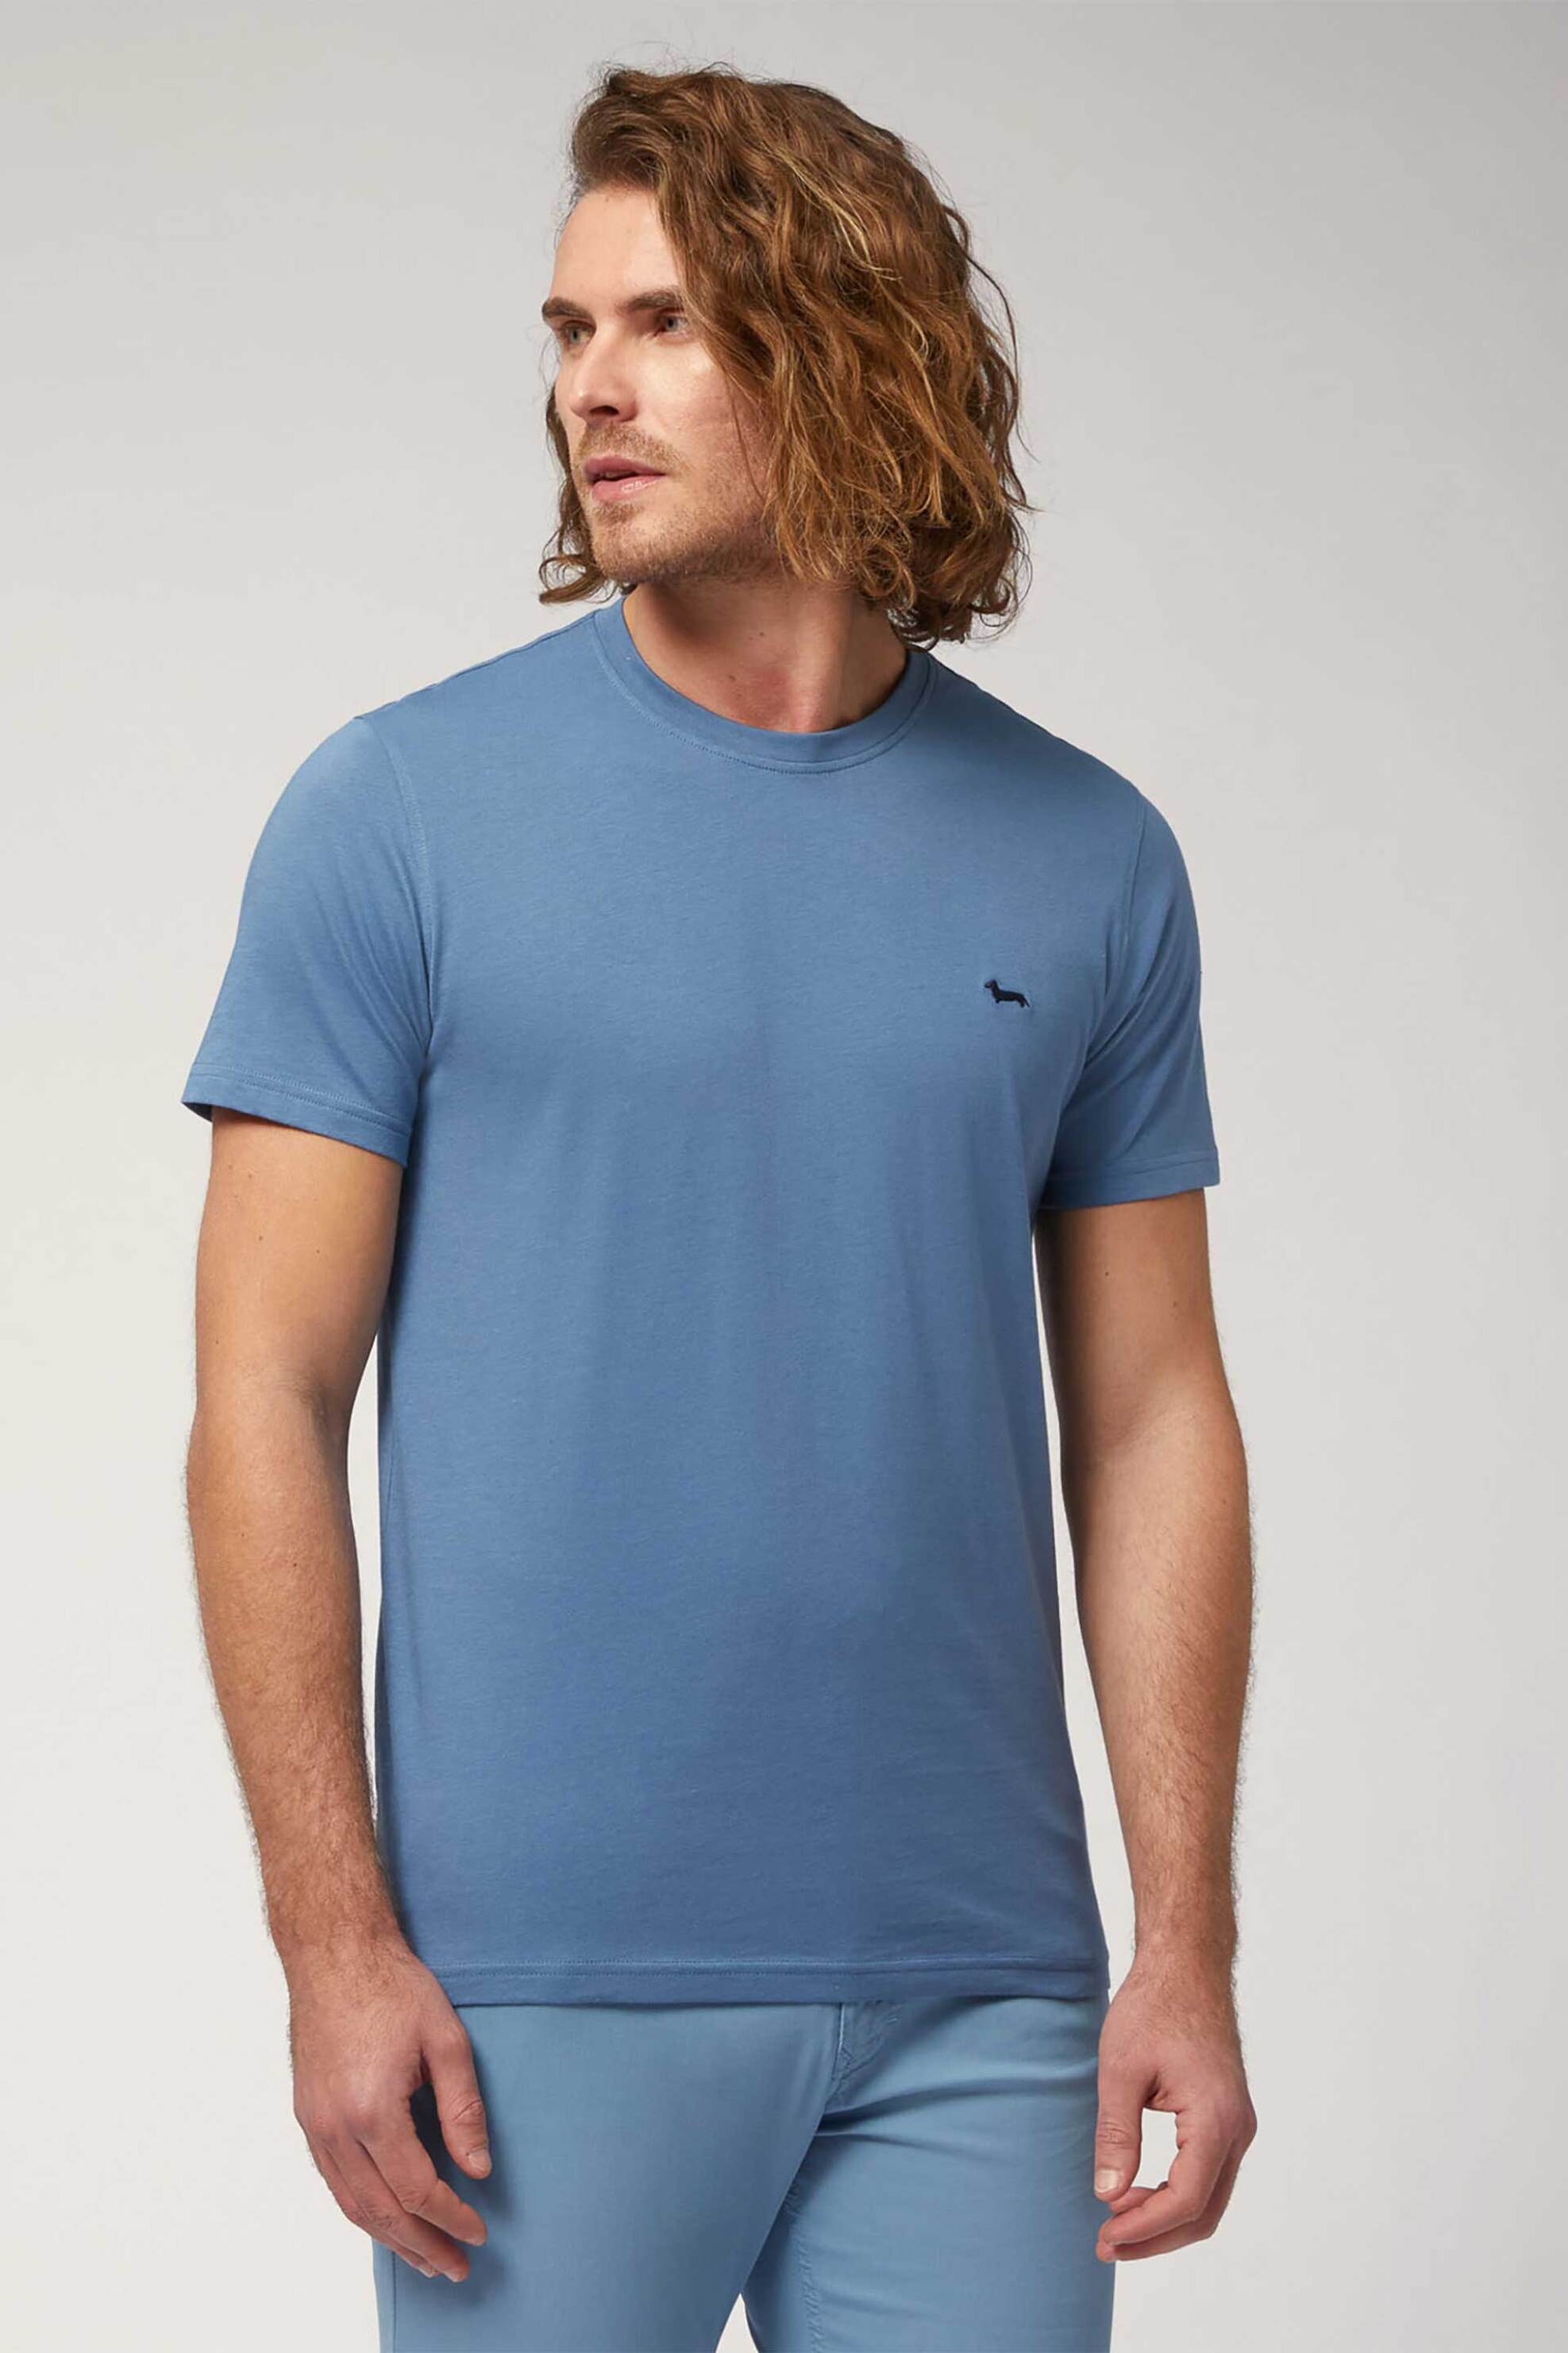 Ανδρική Μόδα > Ανδρικά Ρούχα > Ανδρικές Μπλούζες > Ανδρικά T-Shirts Harmont & Blaine ανδρικό T-shirt με κεντημένο λογότυπο Narrow Fit - INL001021223 Μπλε Ανοιχτό